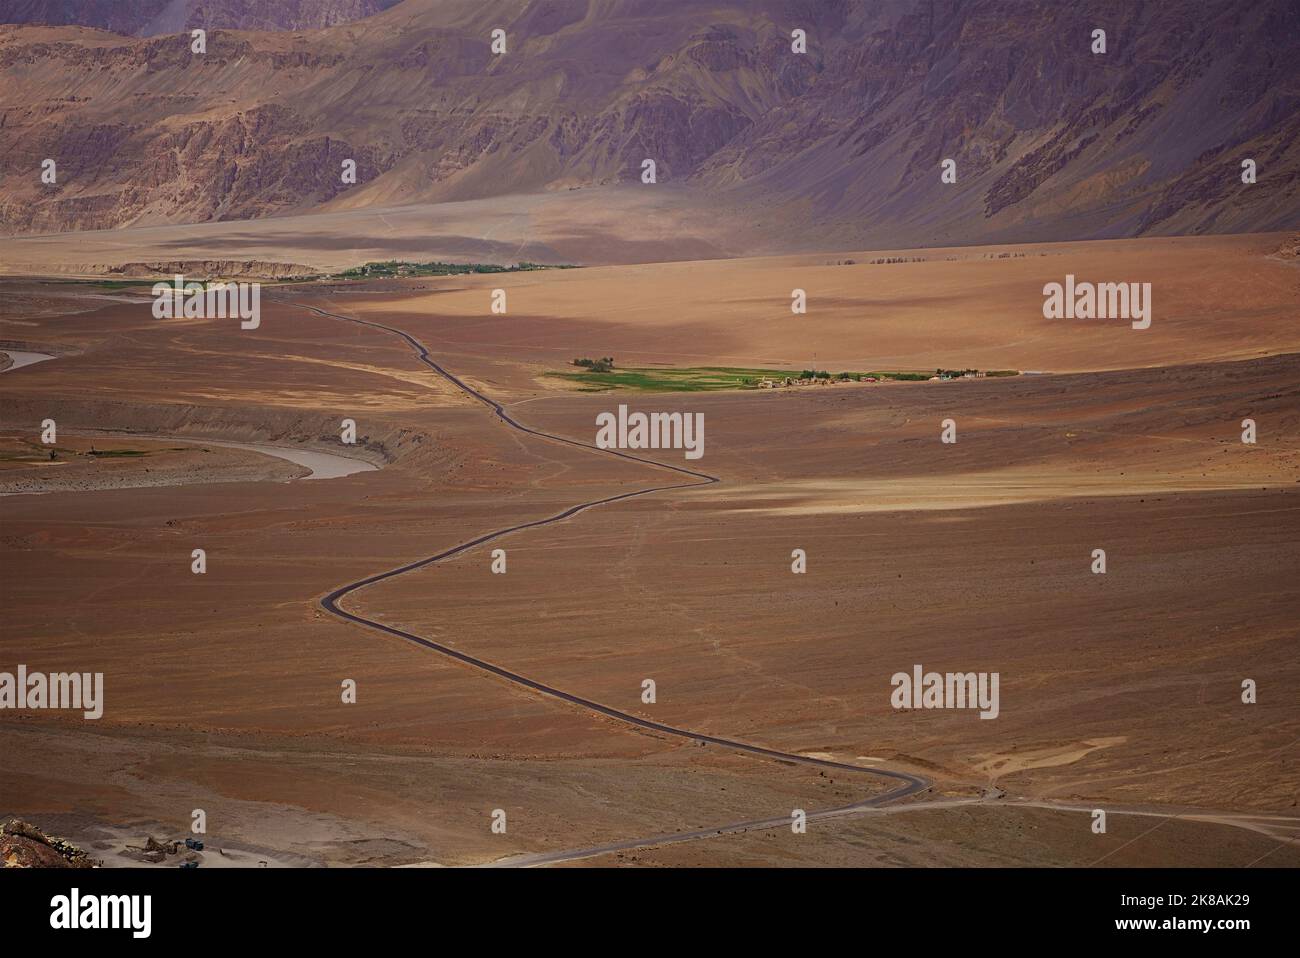 Luftaufnahme von oben Straße Schnitt durch grafische Landschaft trockenen kalten Wüste kargen Bergen kontrastierenden grünen Feld Farmen im Flusstal Stockfoto